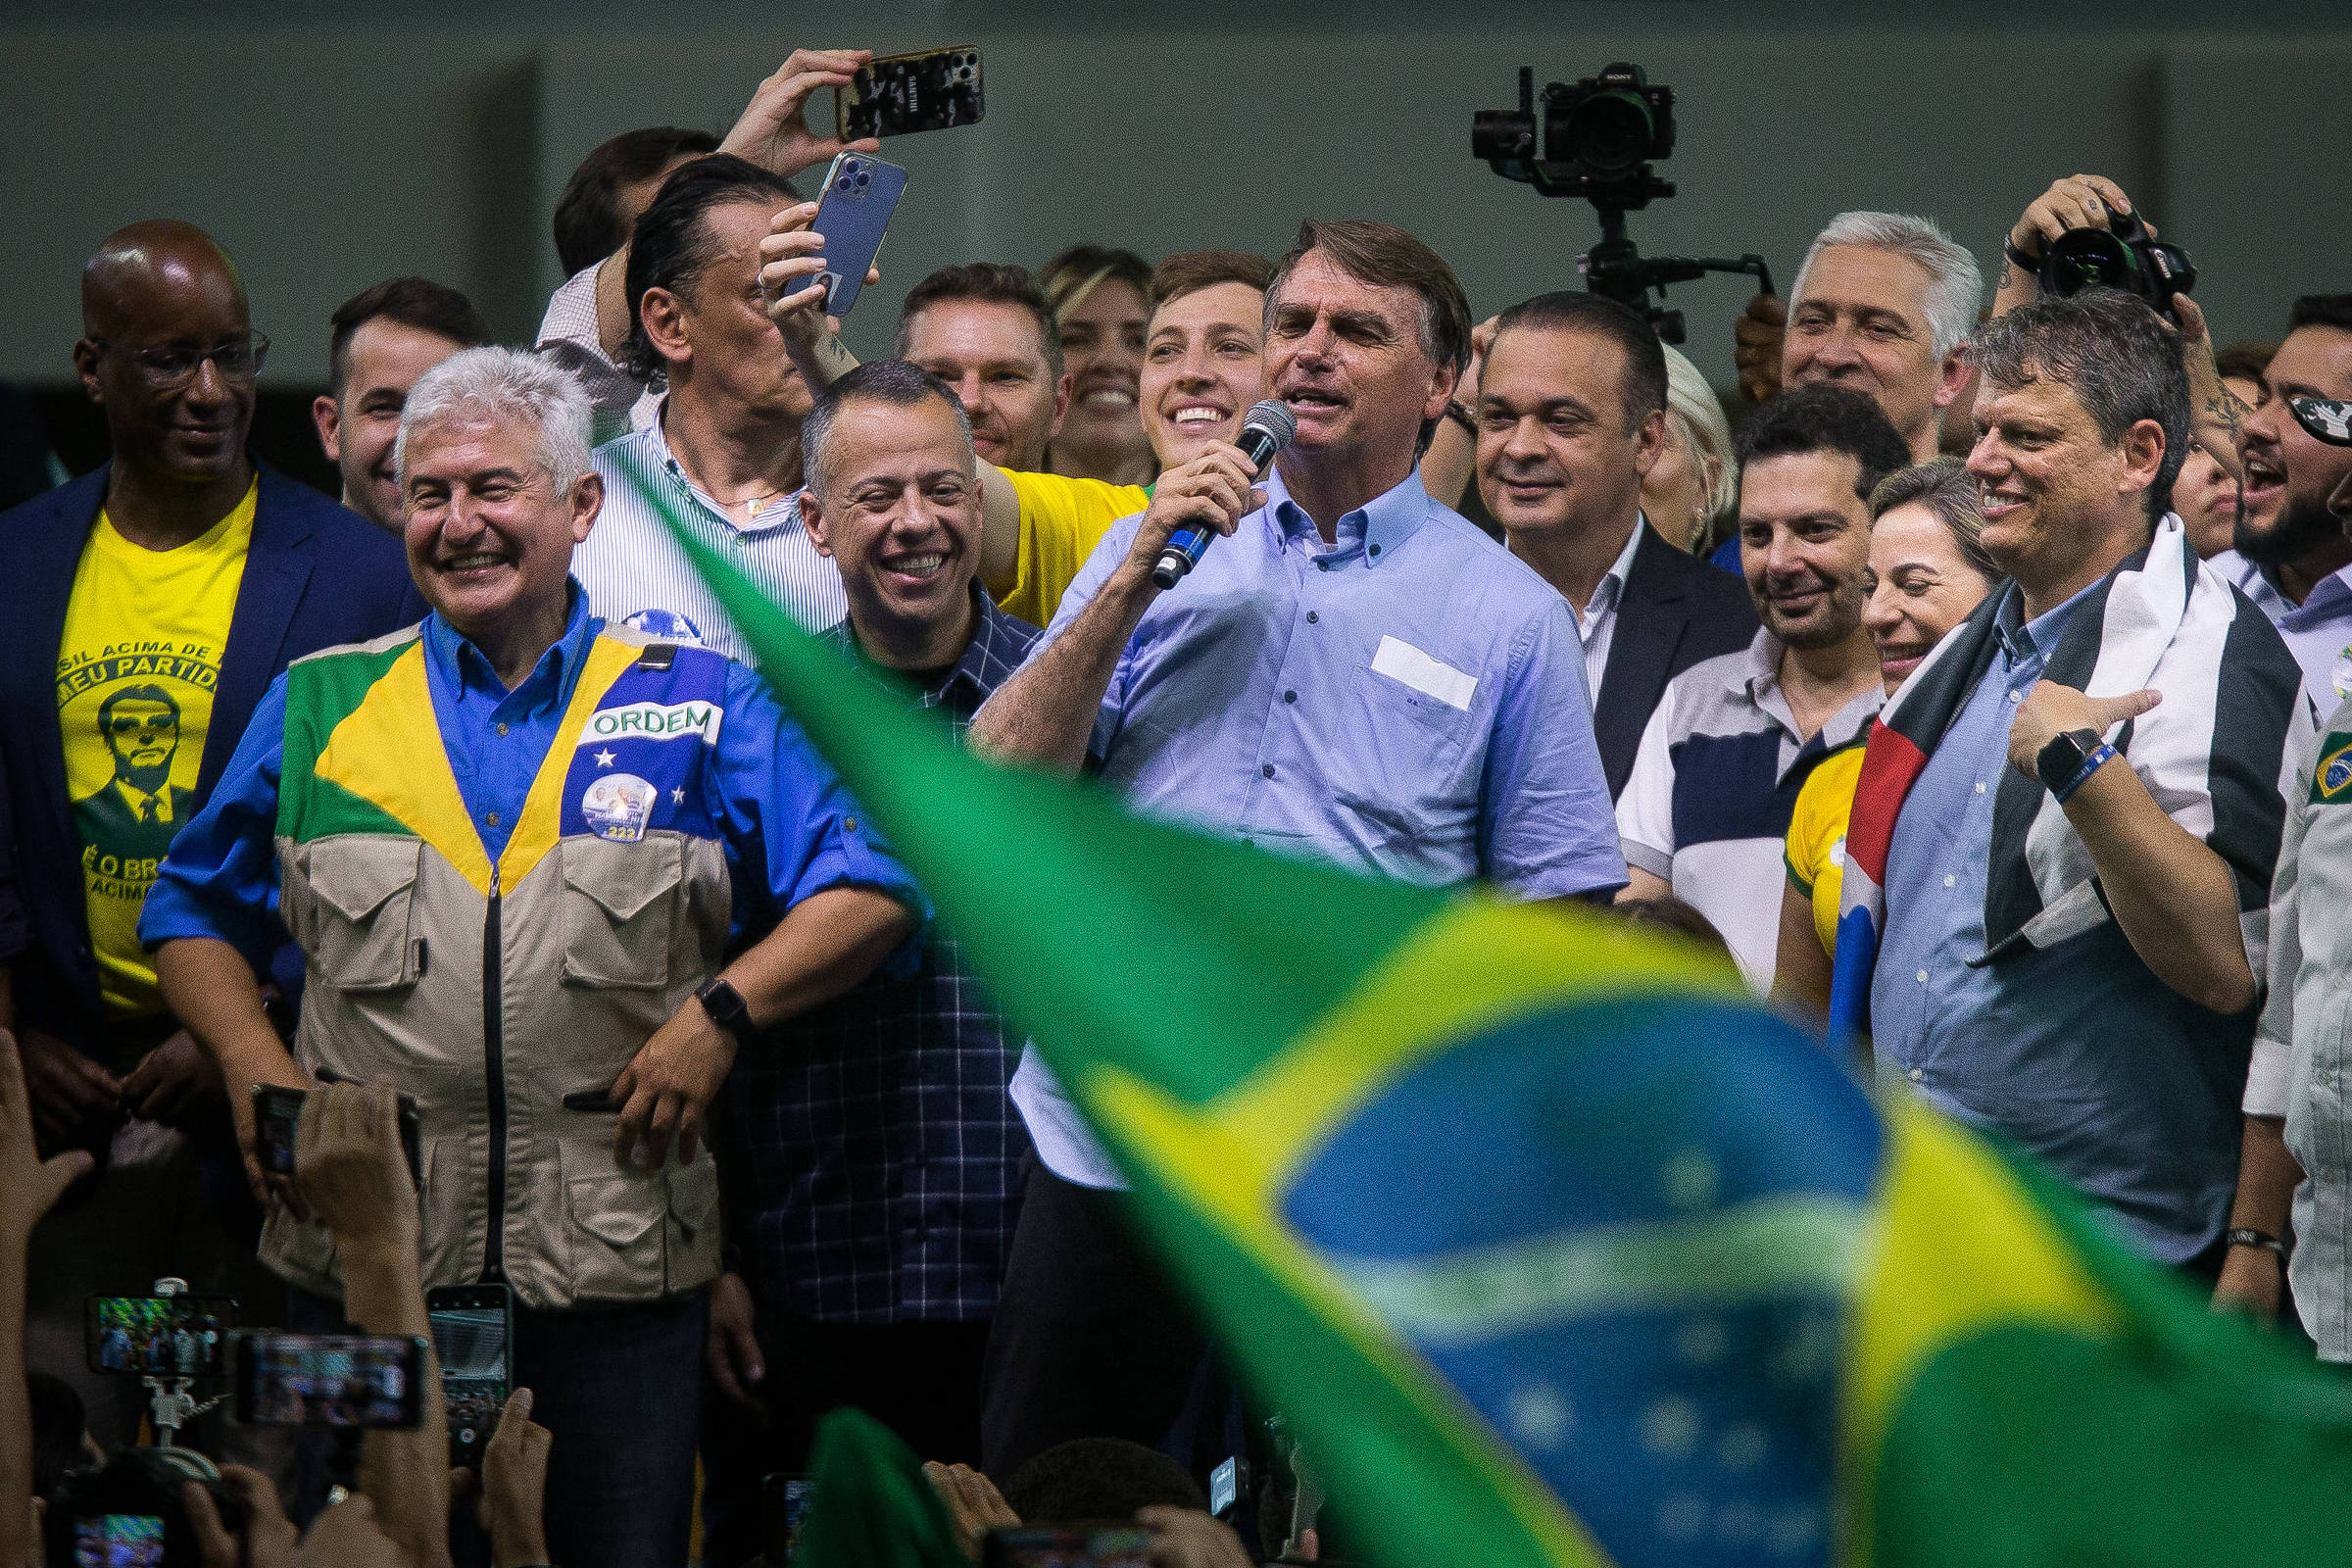 Bolsonarismo usa  para colocar eleições em xeque – DW – 04/07/2022